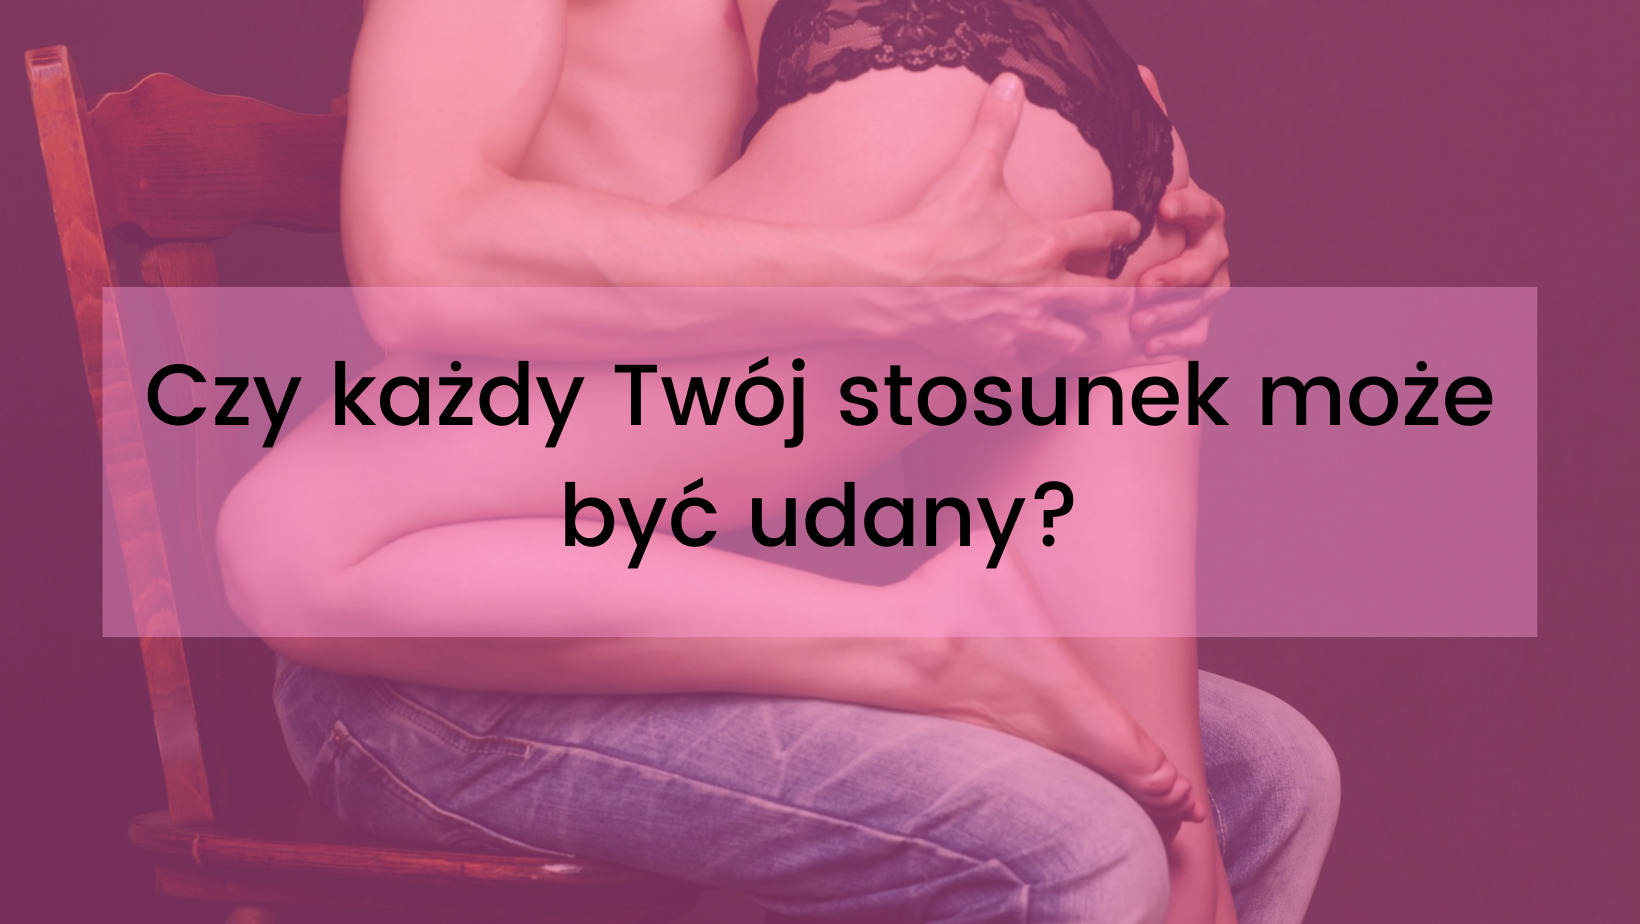 udany seks, udany stosunek, sposoby na udany seks - polskienudeski.pl